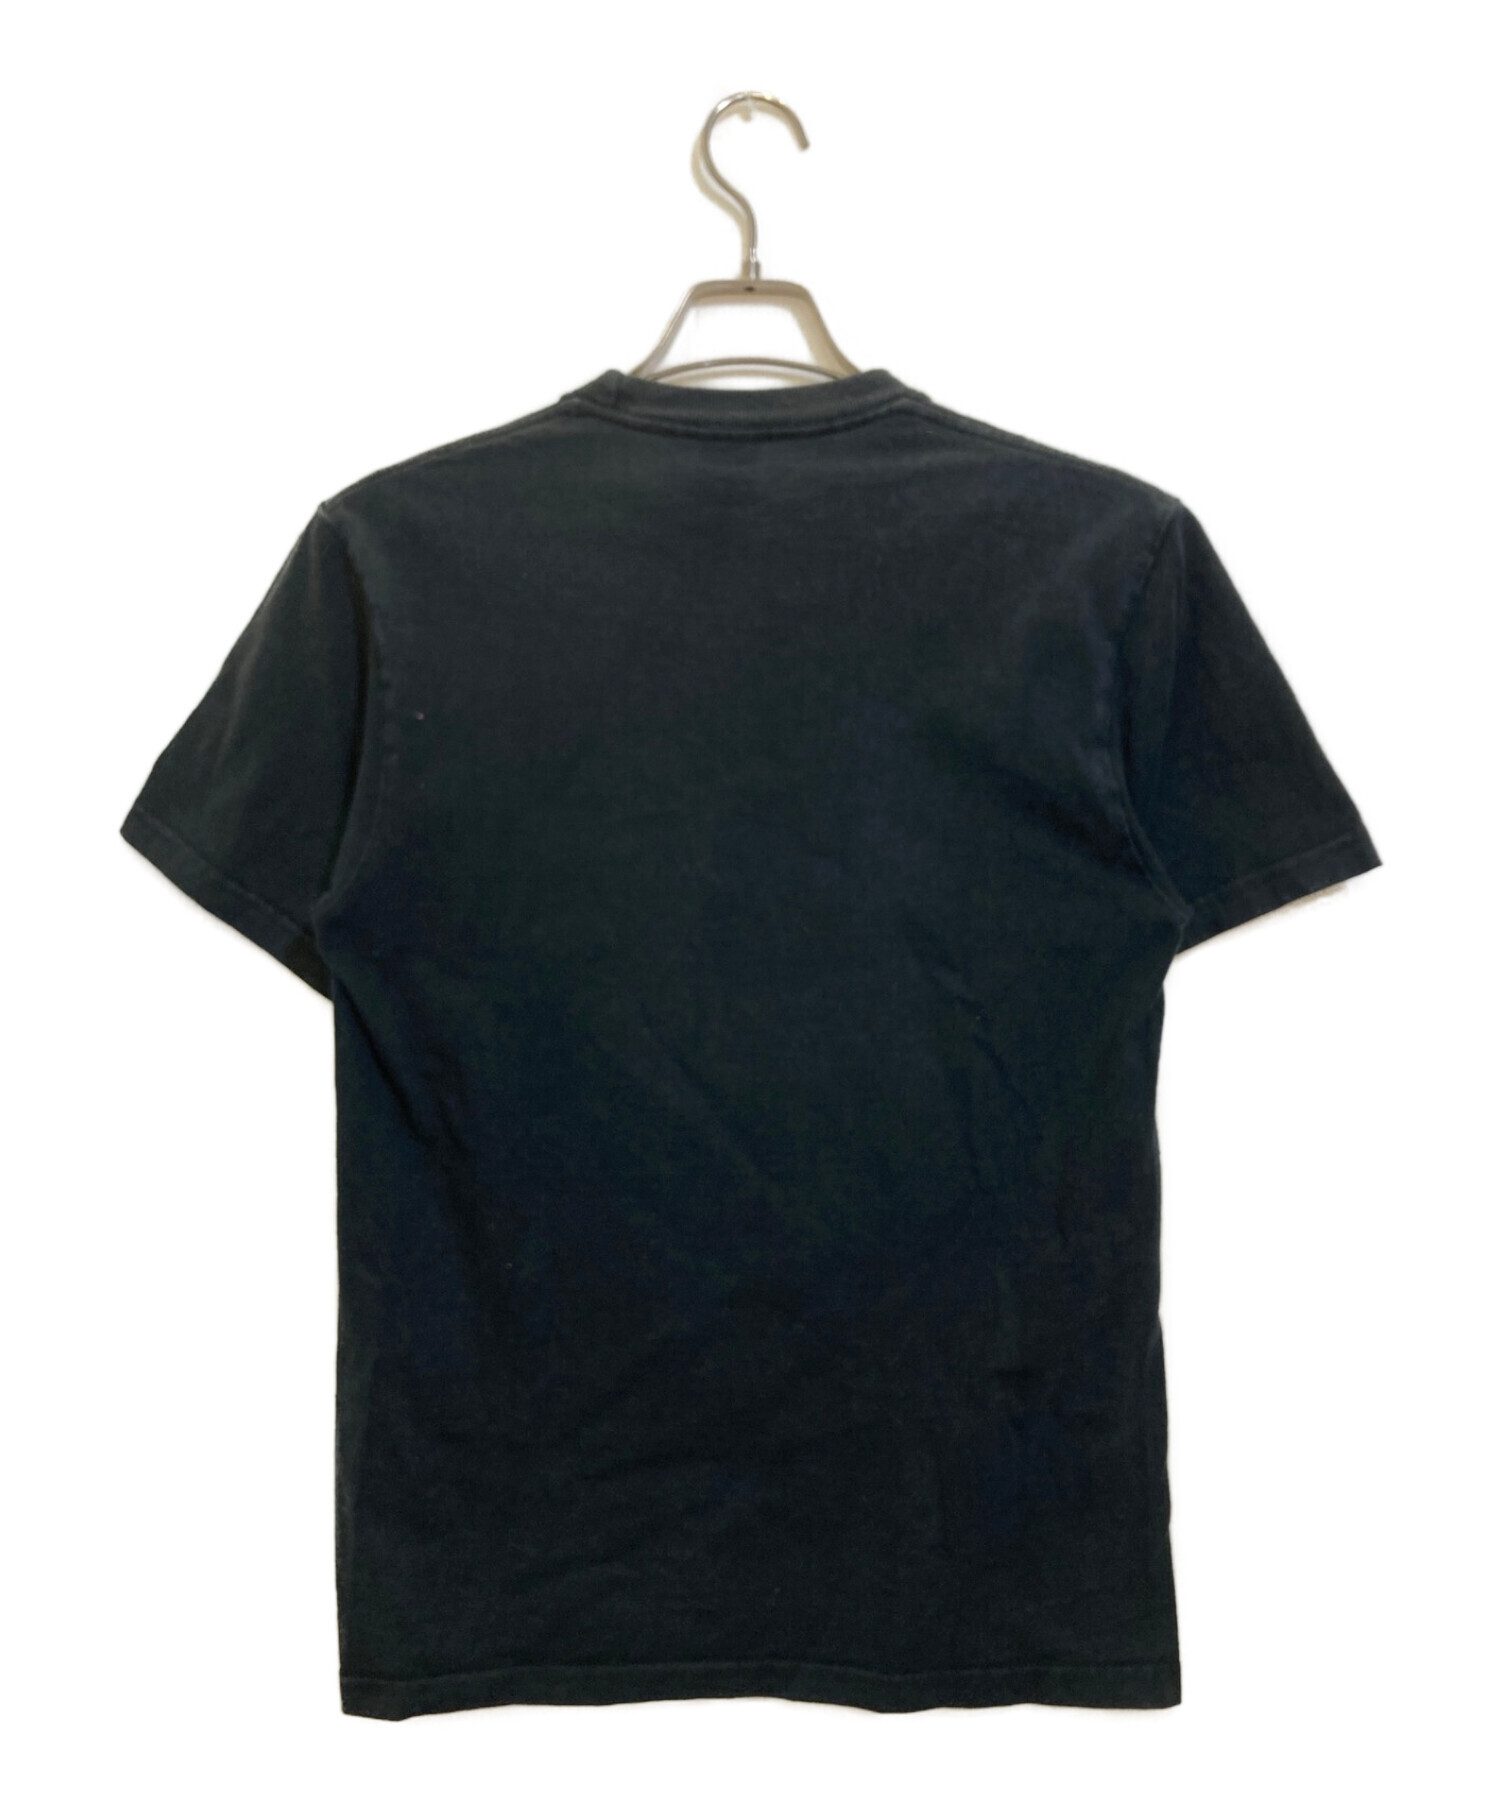 Supreme (シュプリーム) Bedroom T shirt ブラック サイズ:S